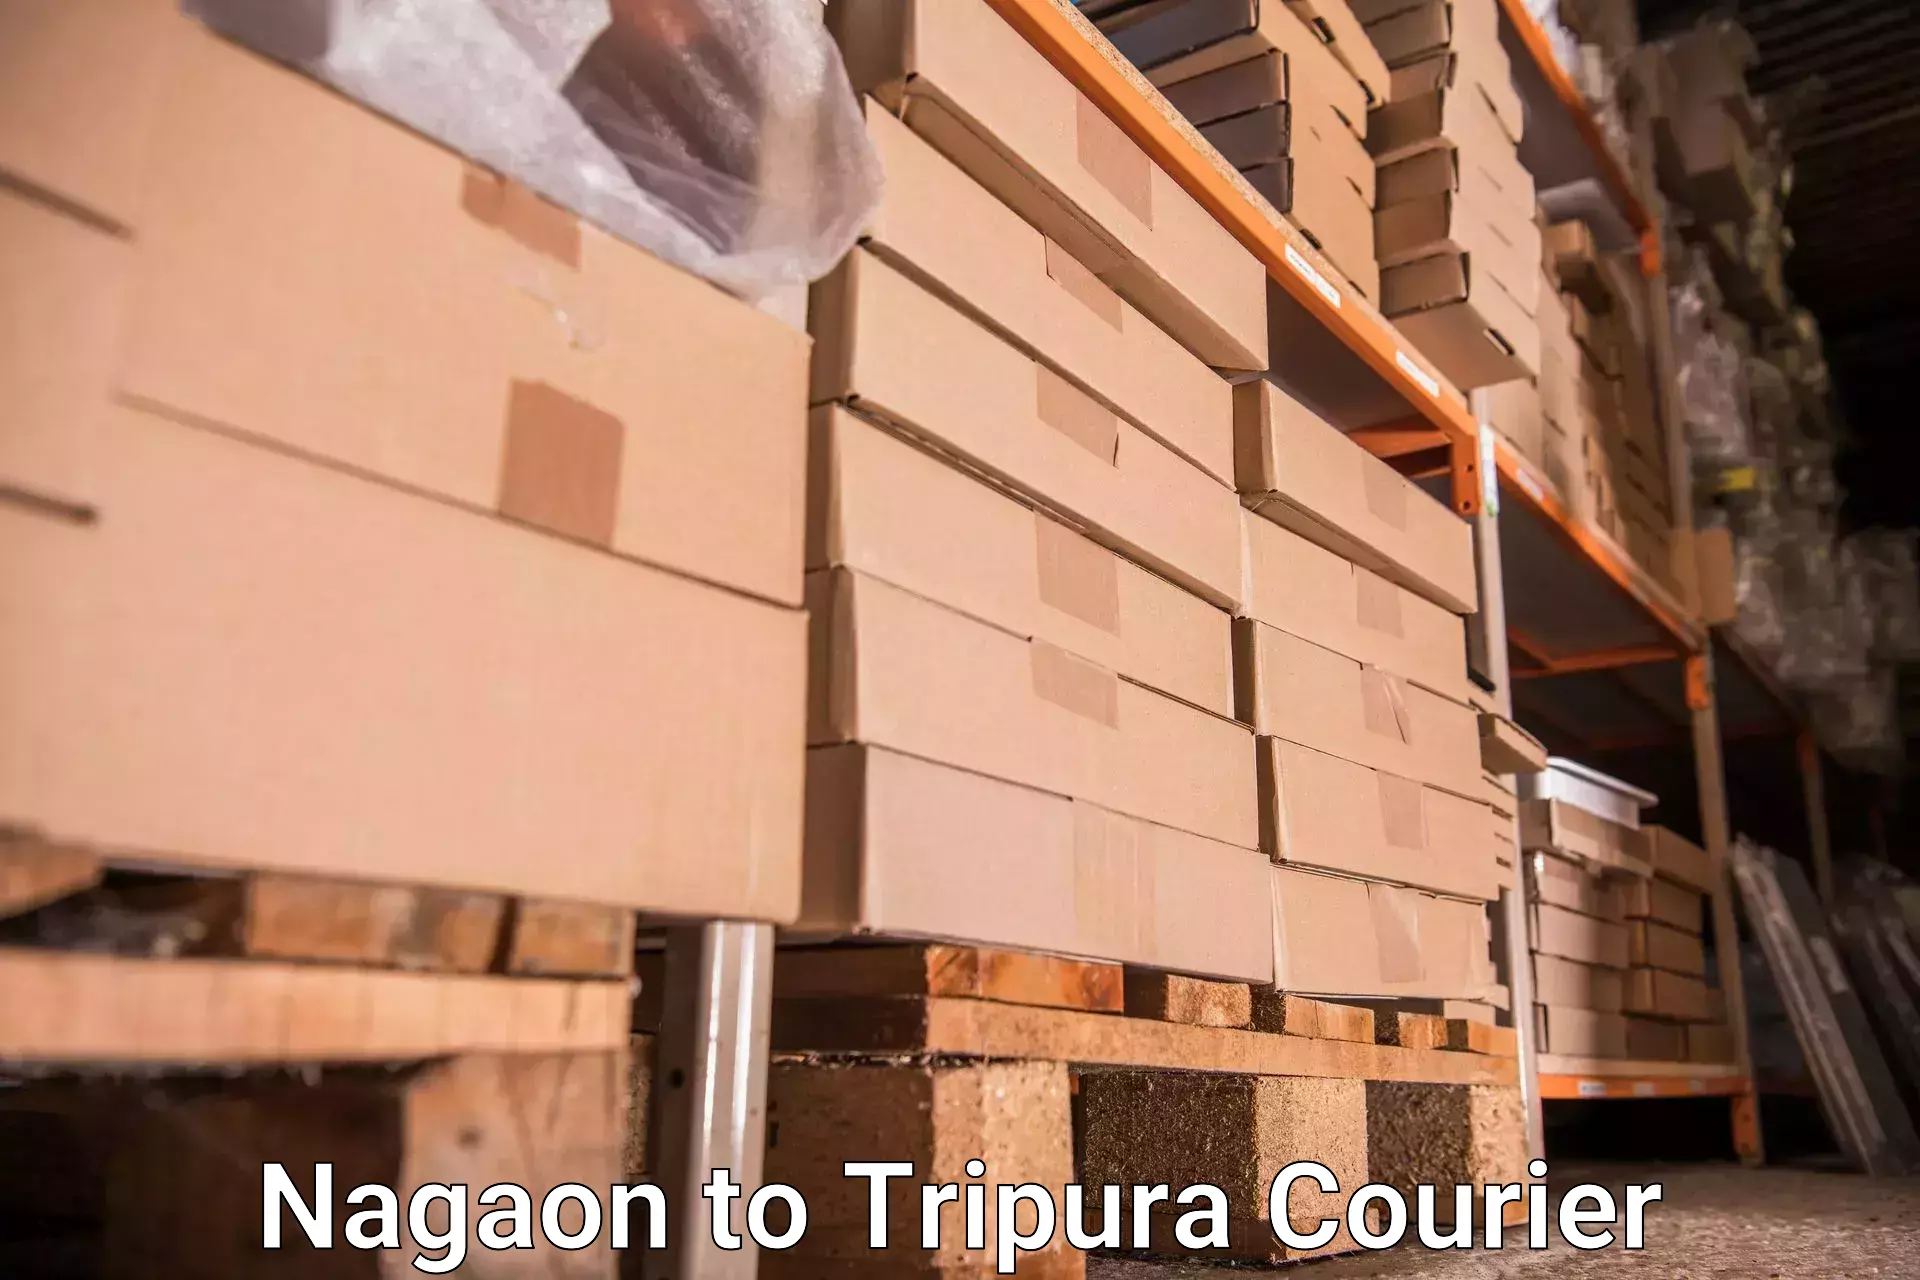 Luggage delivery network Nagaon to IIIT Agartala